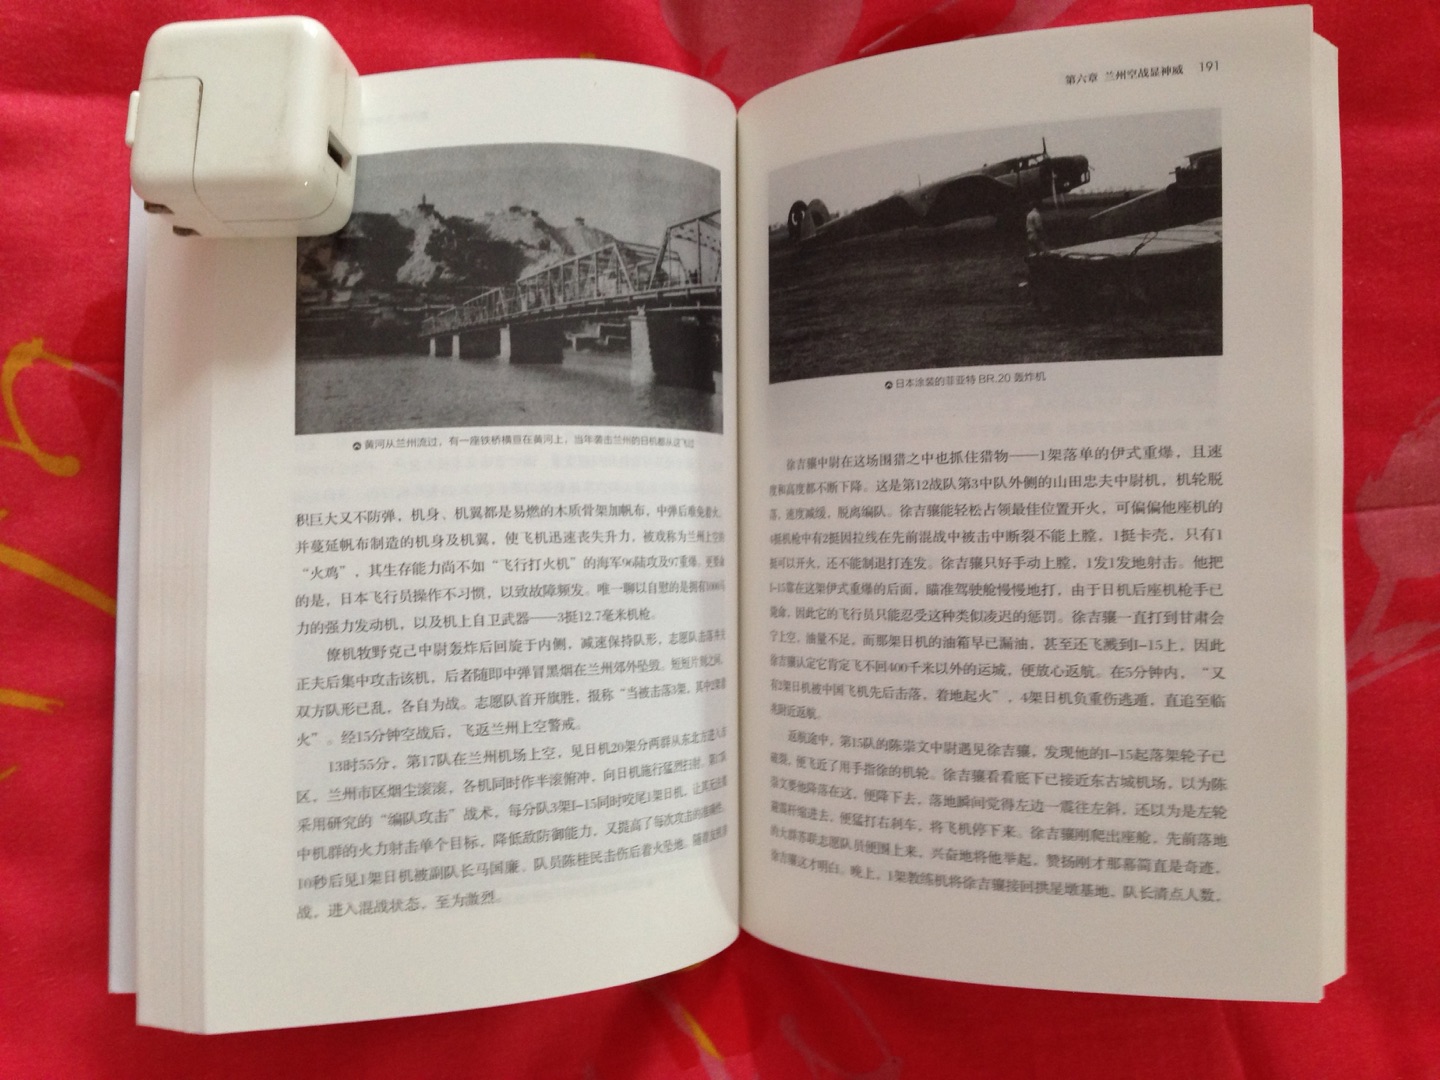 少见的介绍苏联援华志愿航空队的书！